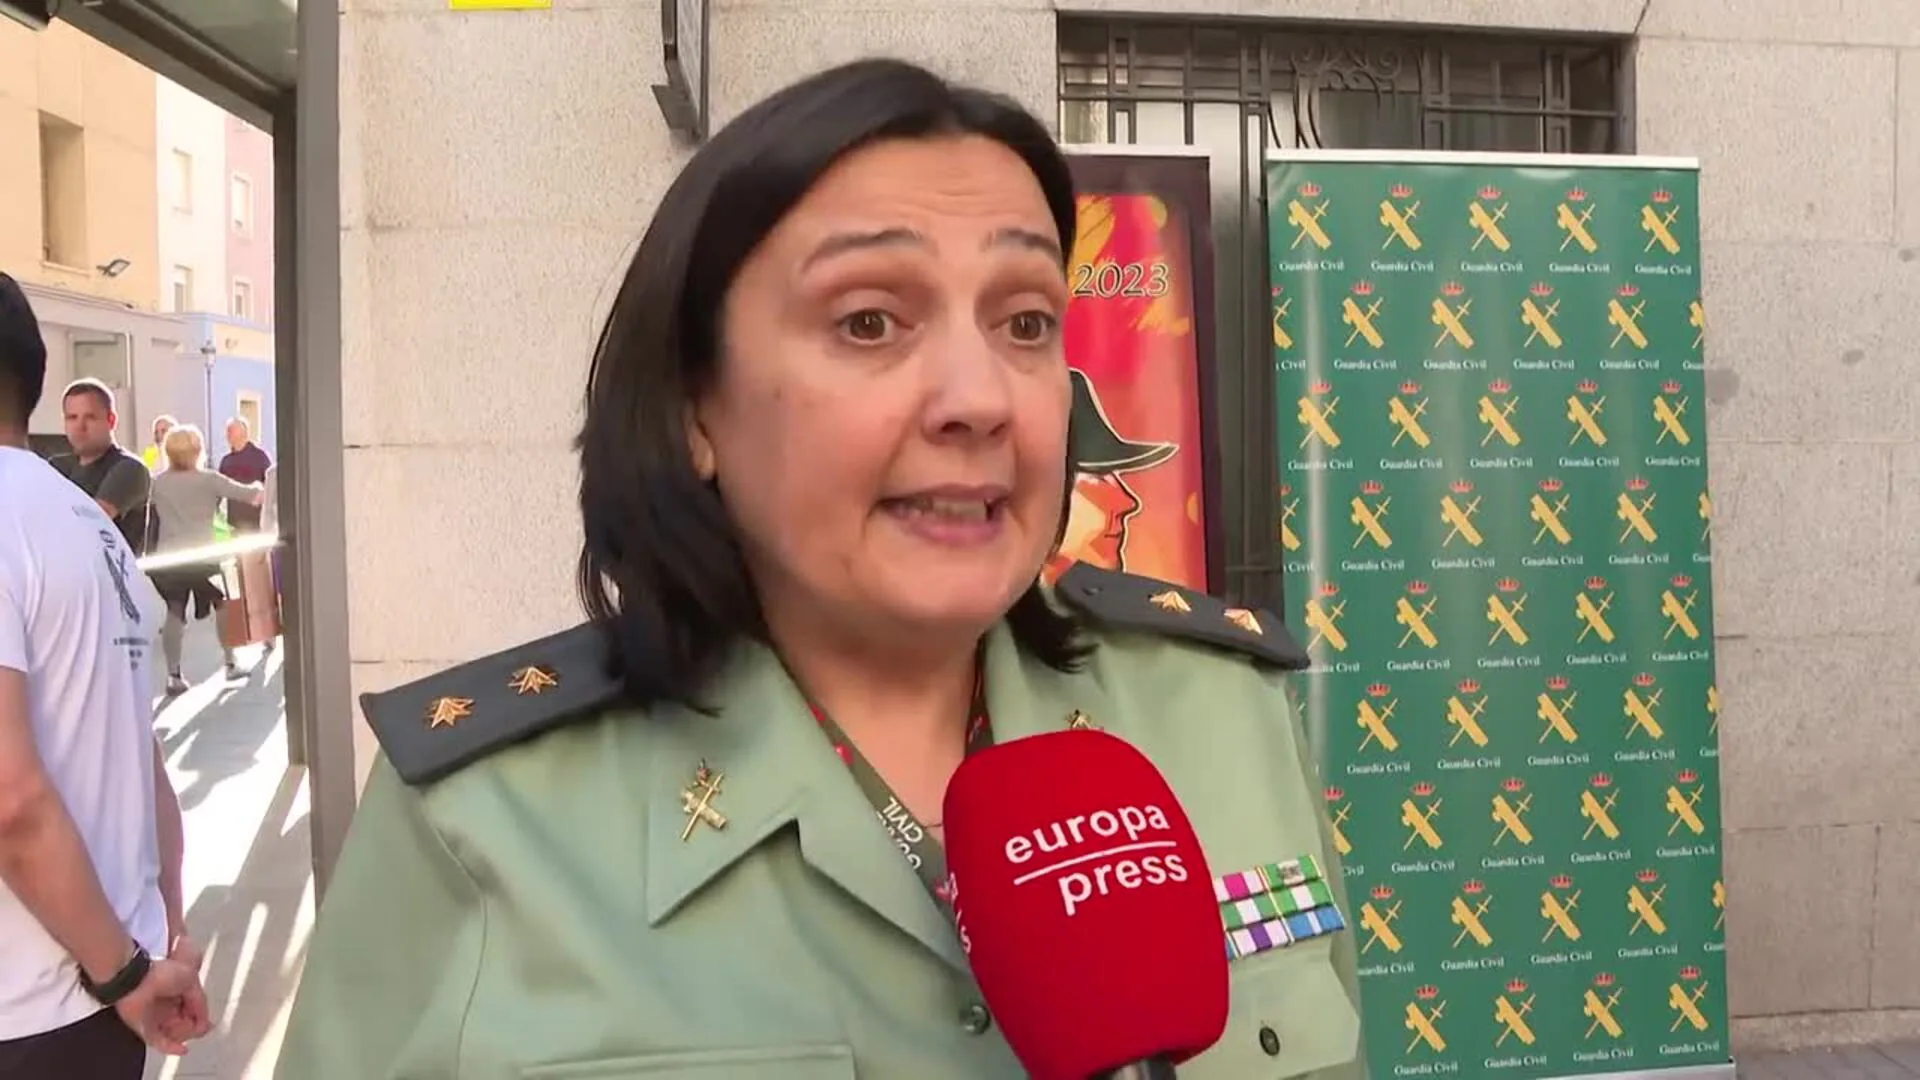 Portavoz De La Guardia Civil Anima A Las Mujeres A Ingresar En La Guardia Civil El Correo